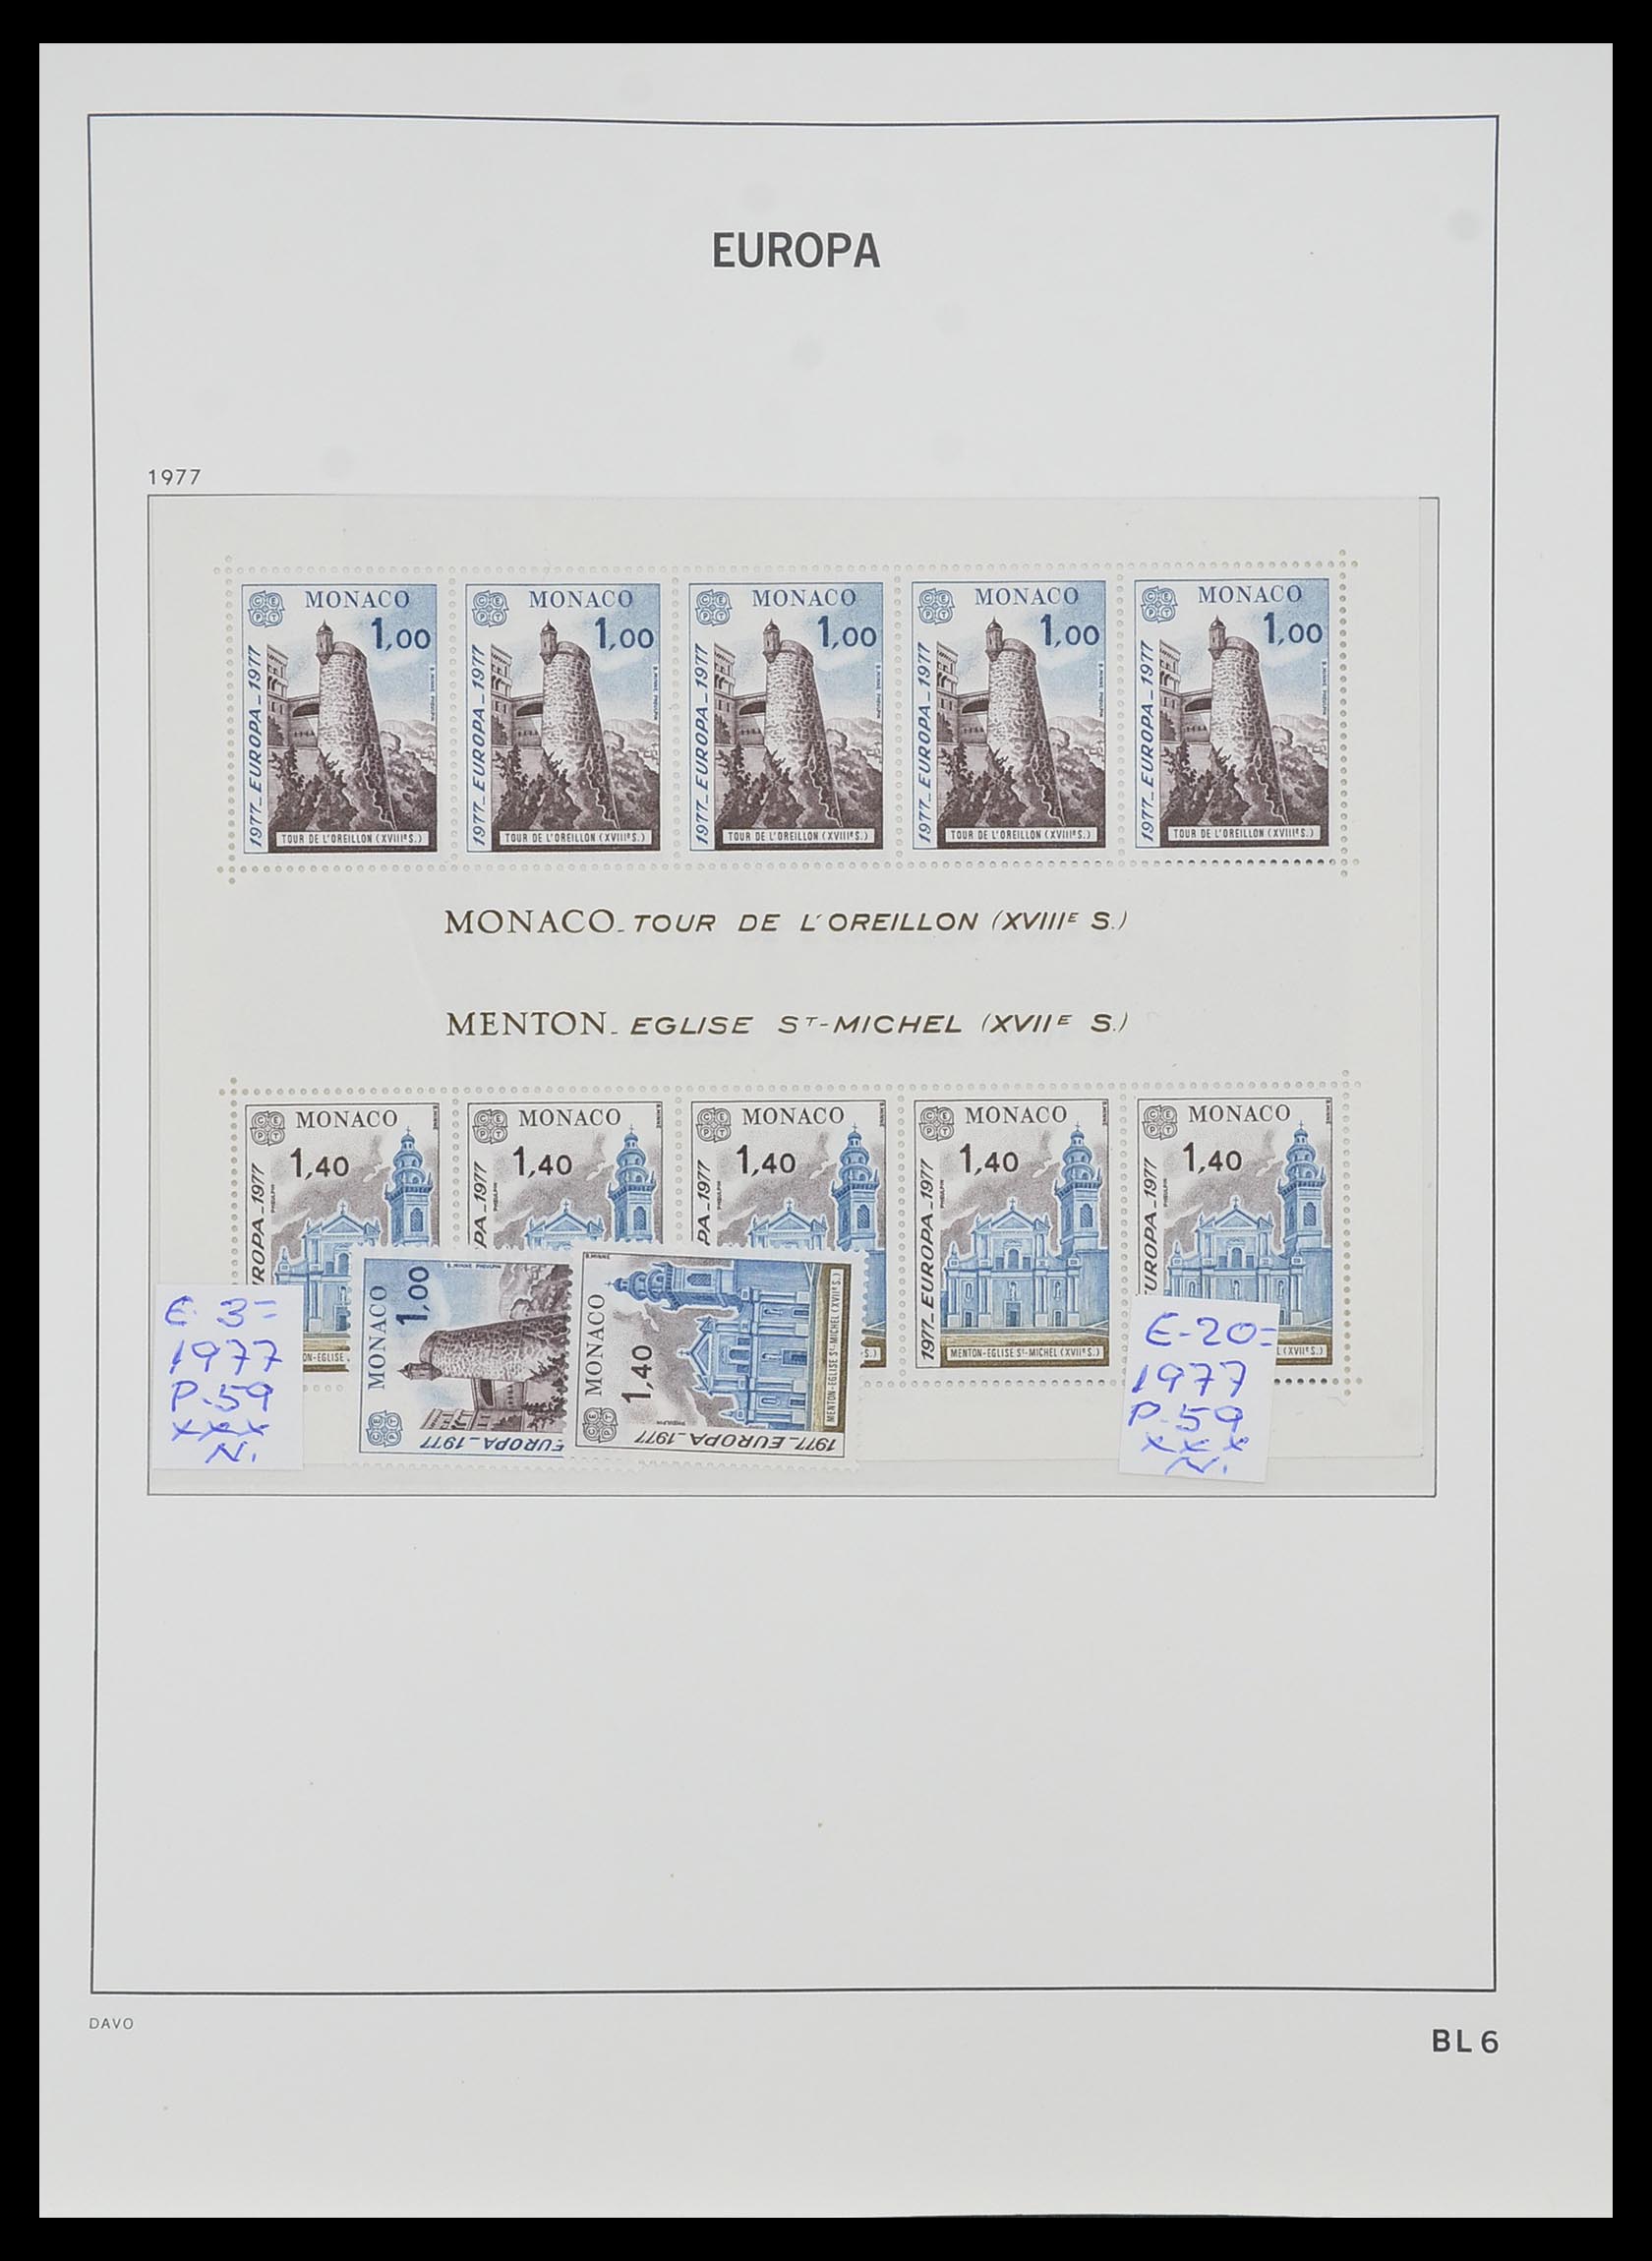 33985 006 - Stamp collection 33985 Europa CEPT souvenir sheets 1974-2014.